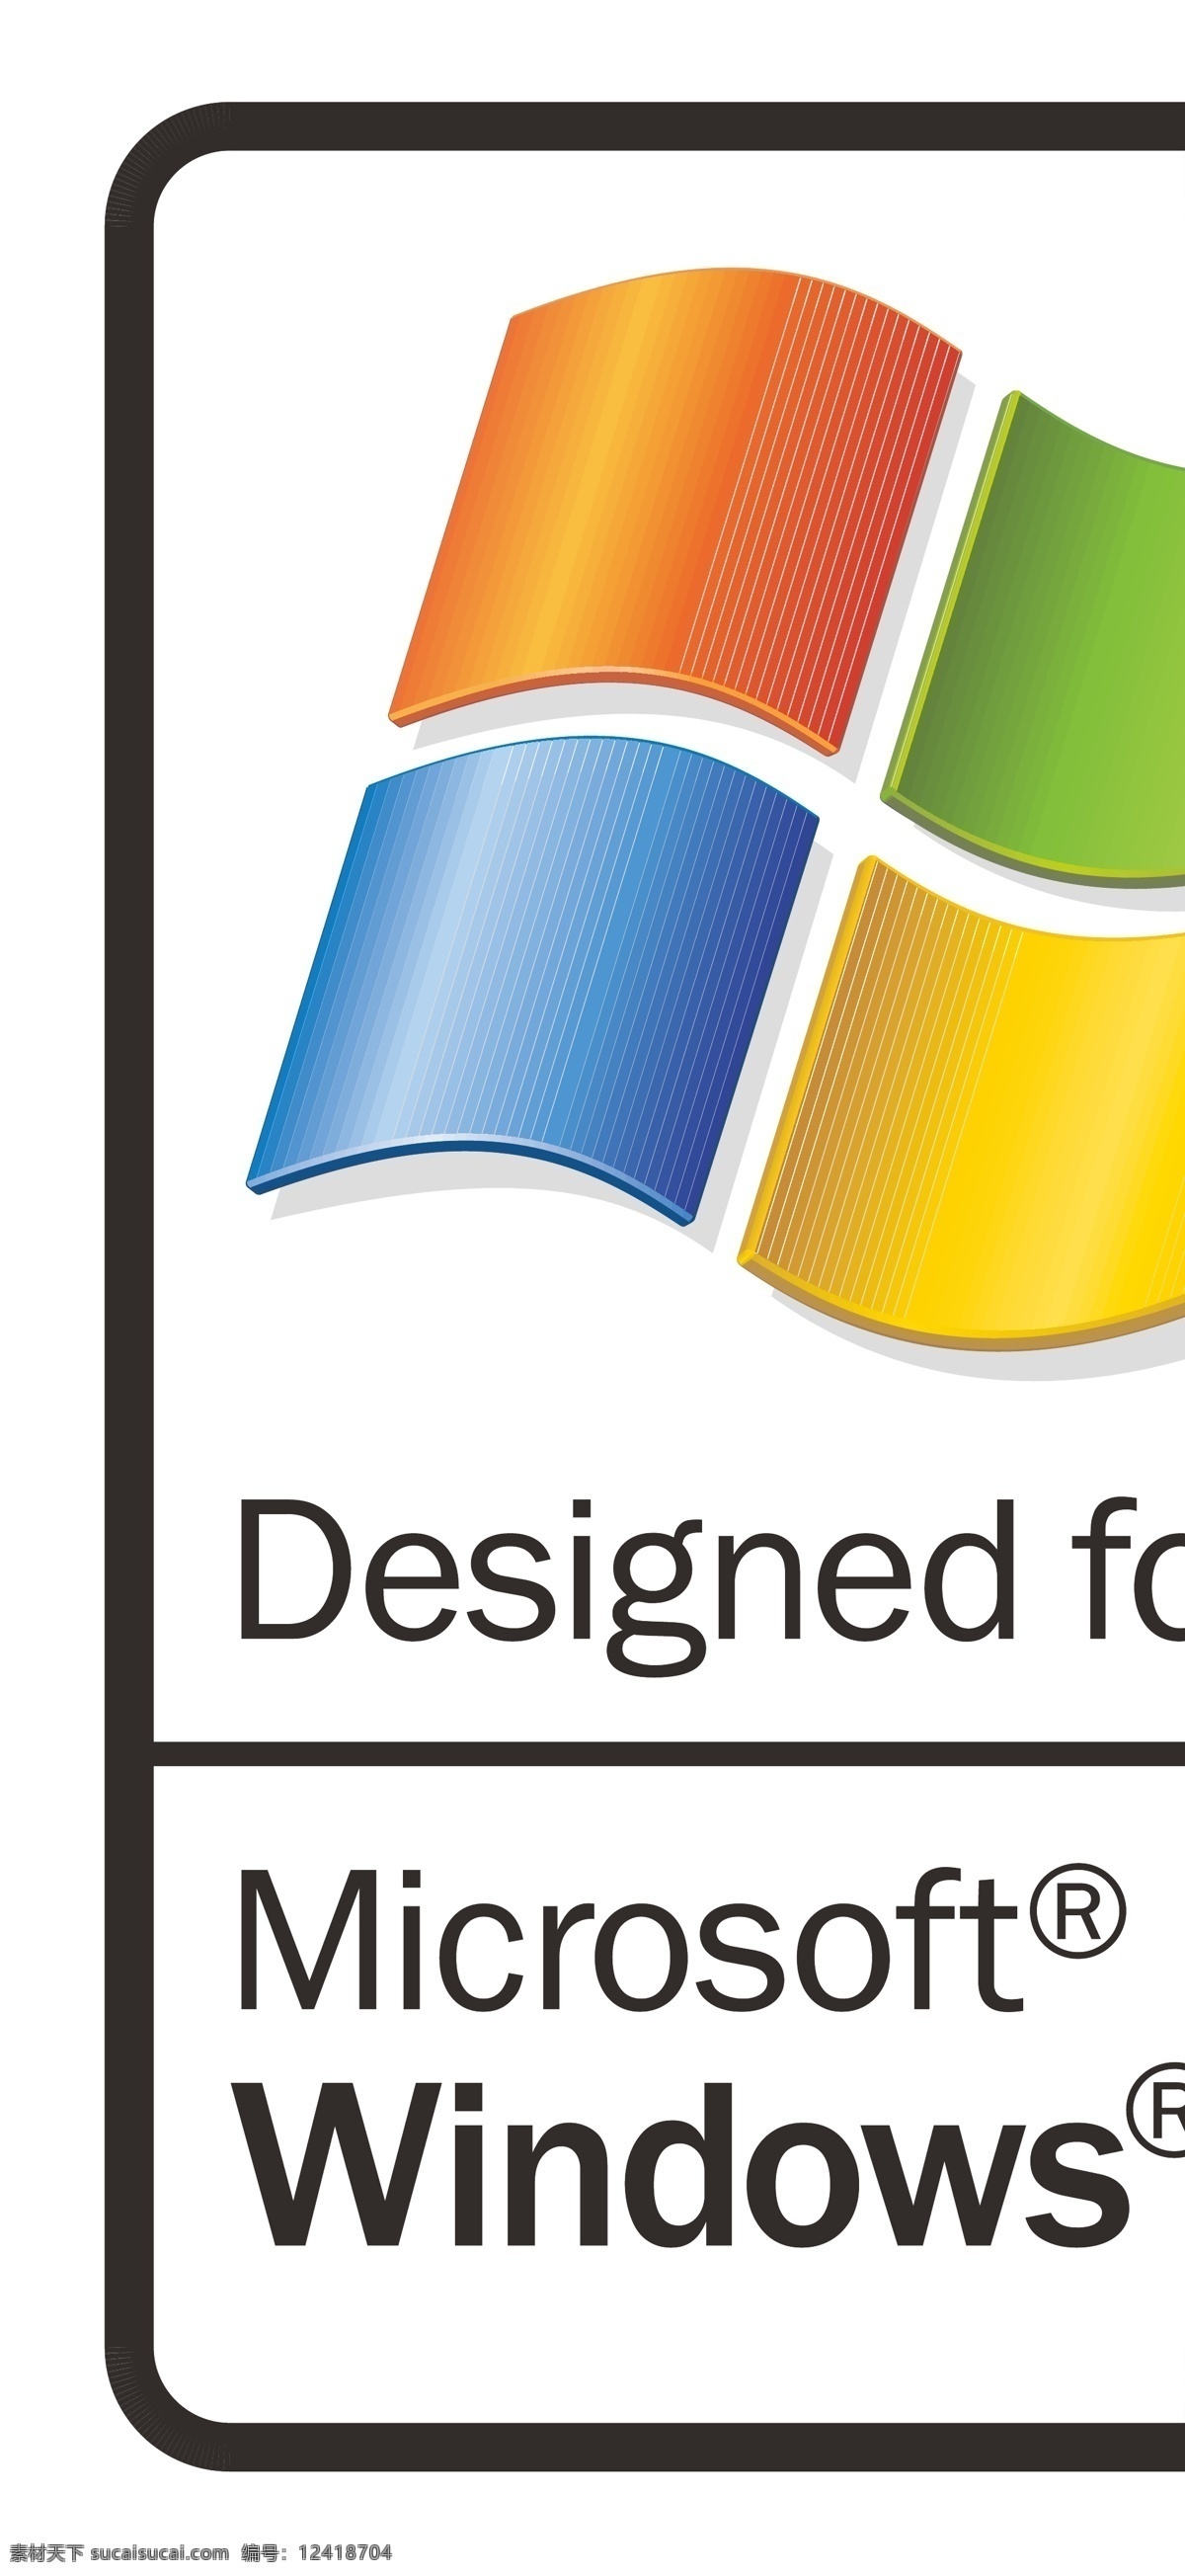 电脑xp系统 windows xp图标 xp标志 微软 xp 系统 图标 电脑 企业 logo 标志 标识标志图标 矢量